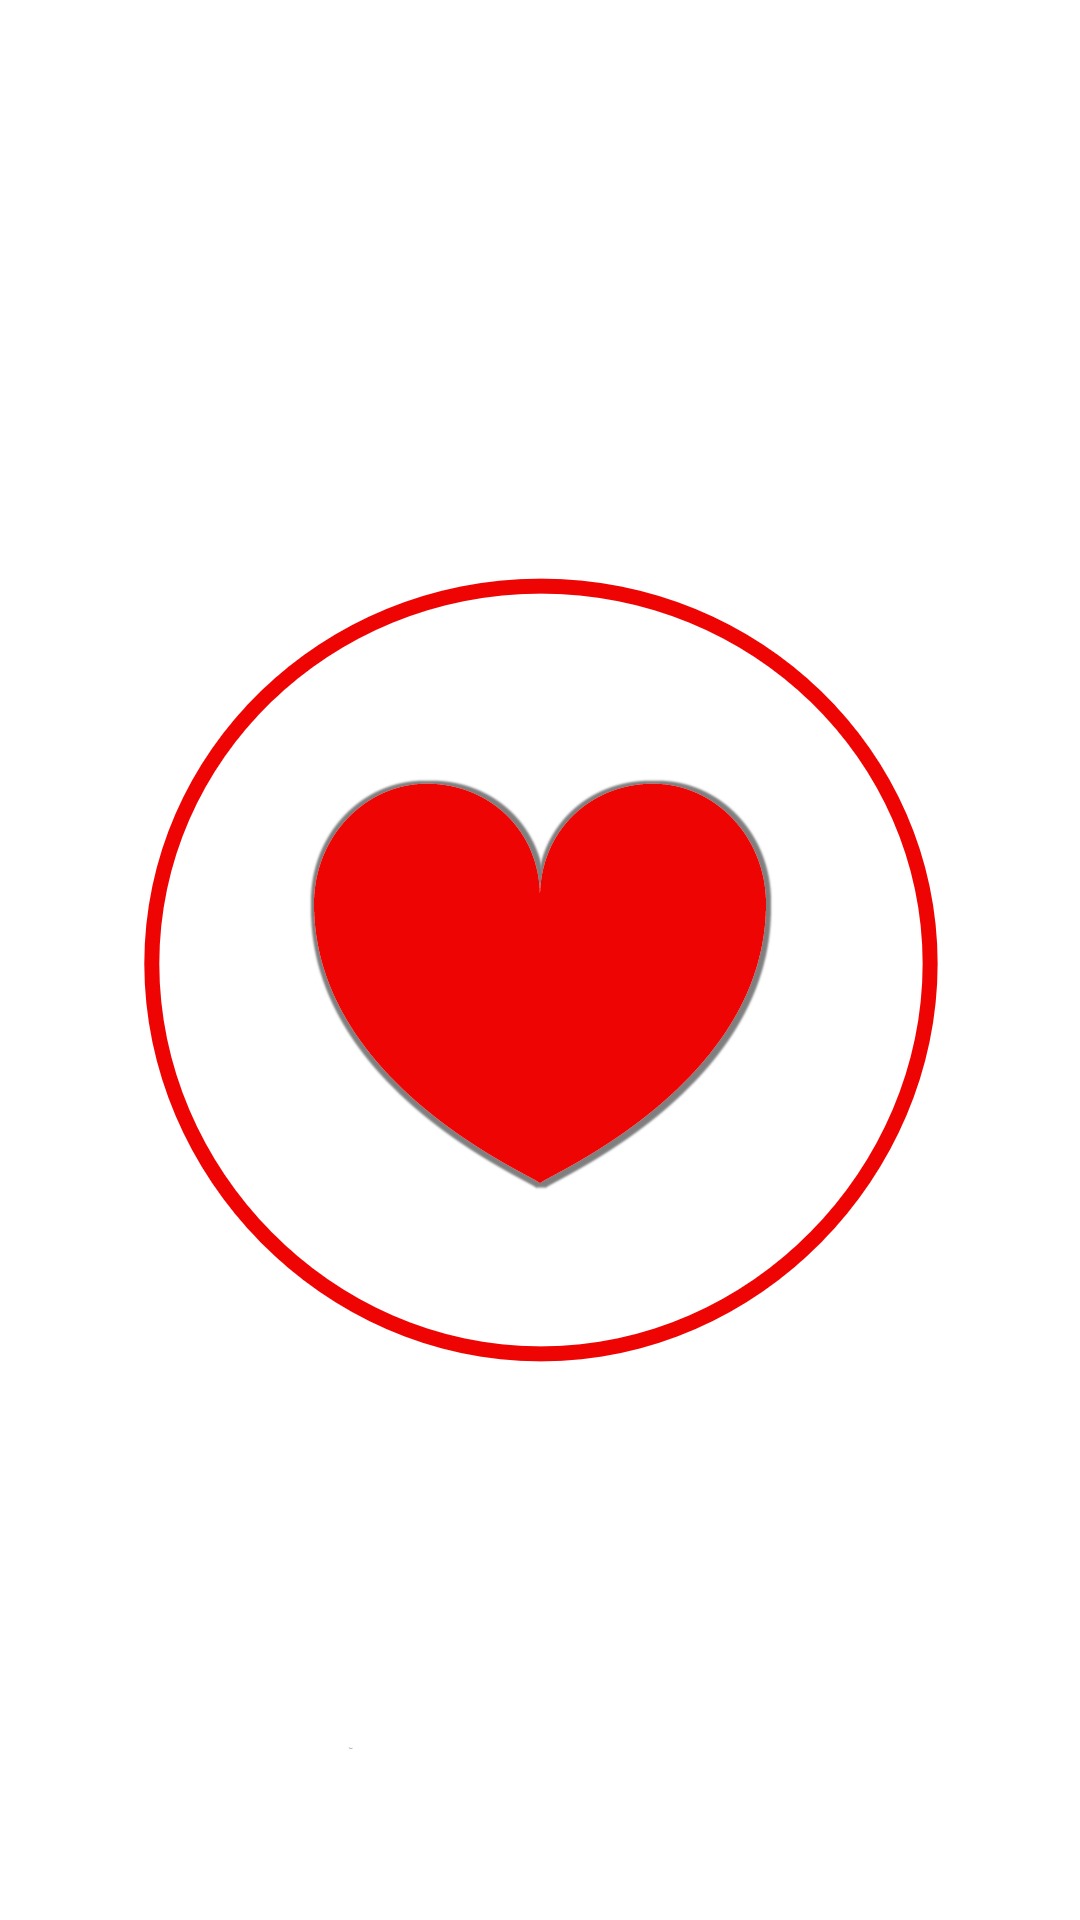 Instagram-cover-heart-red-white-lotnotes.com.jpg